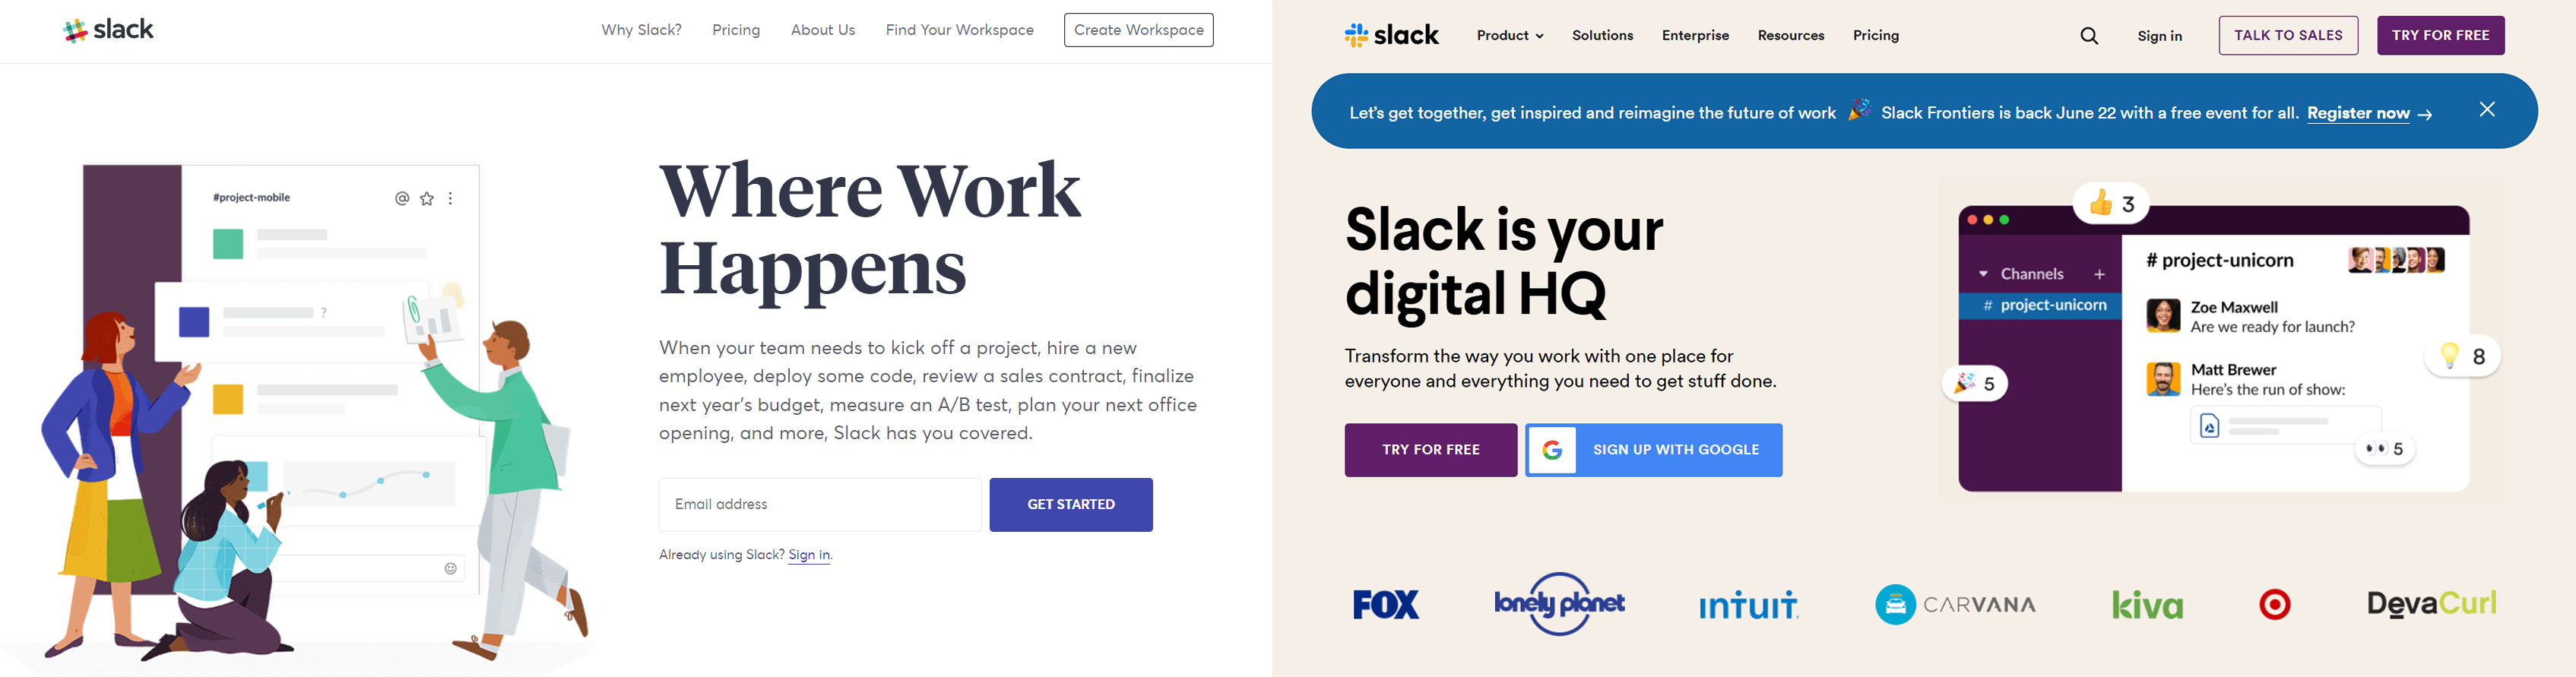 Slack website before and after redesign